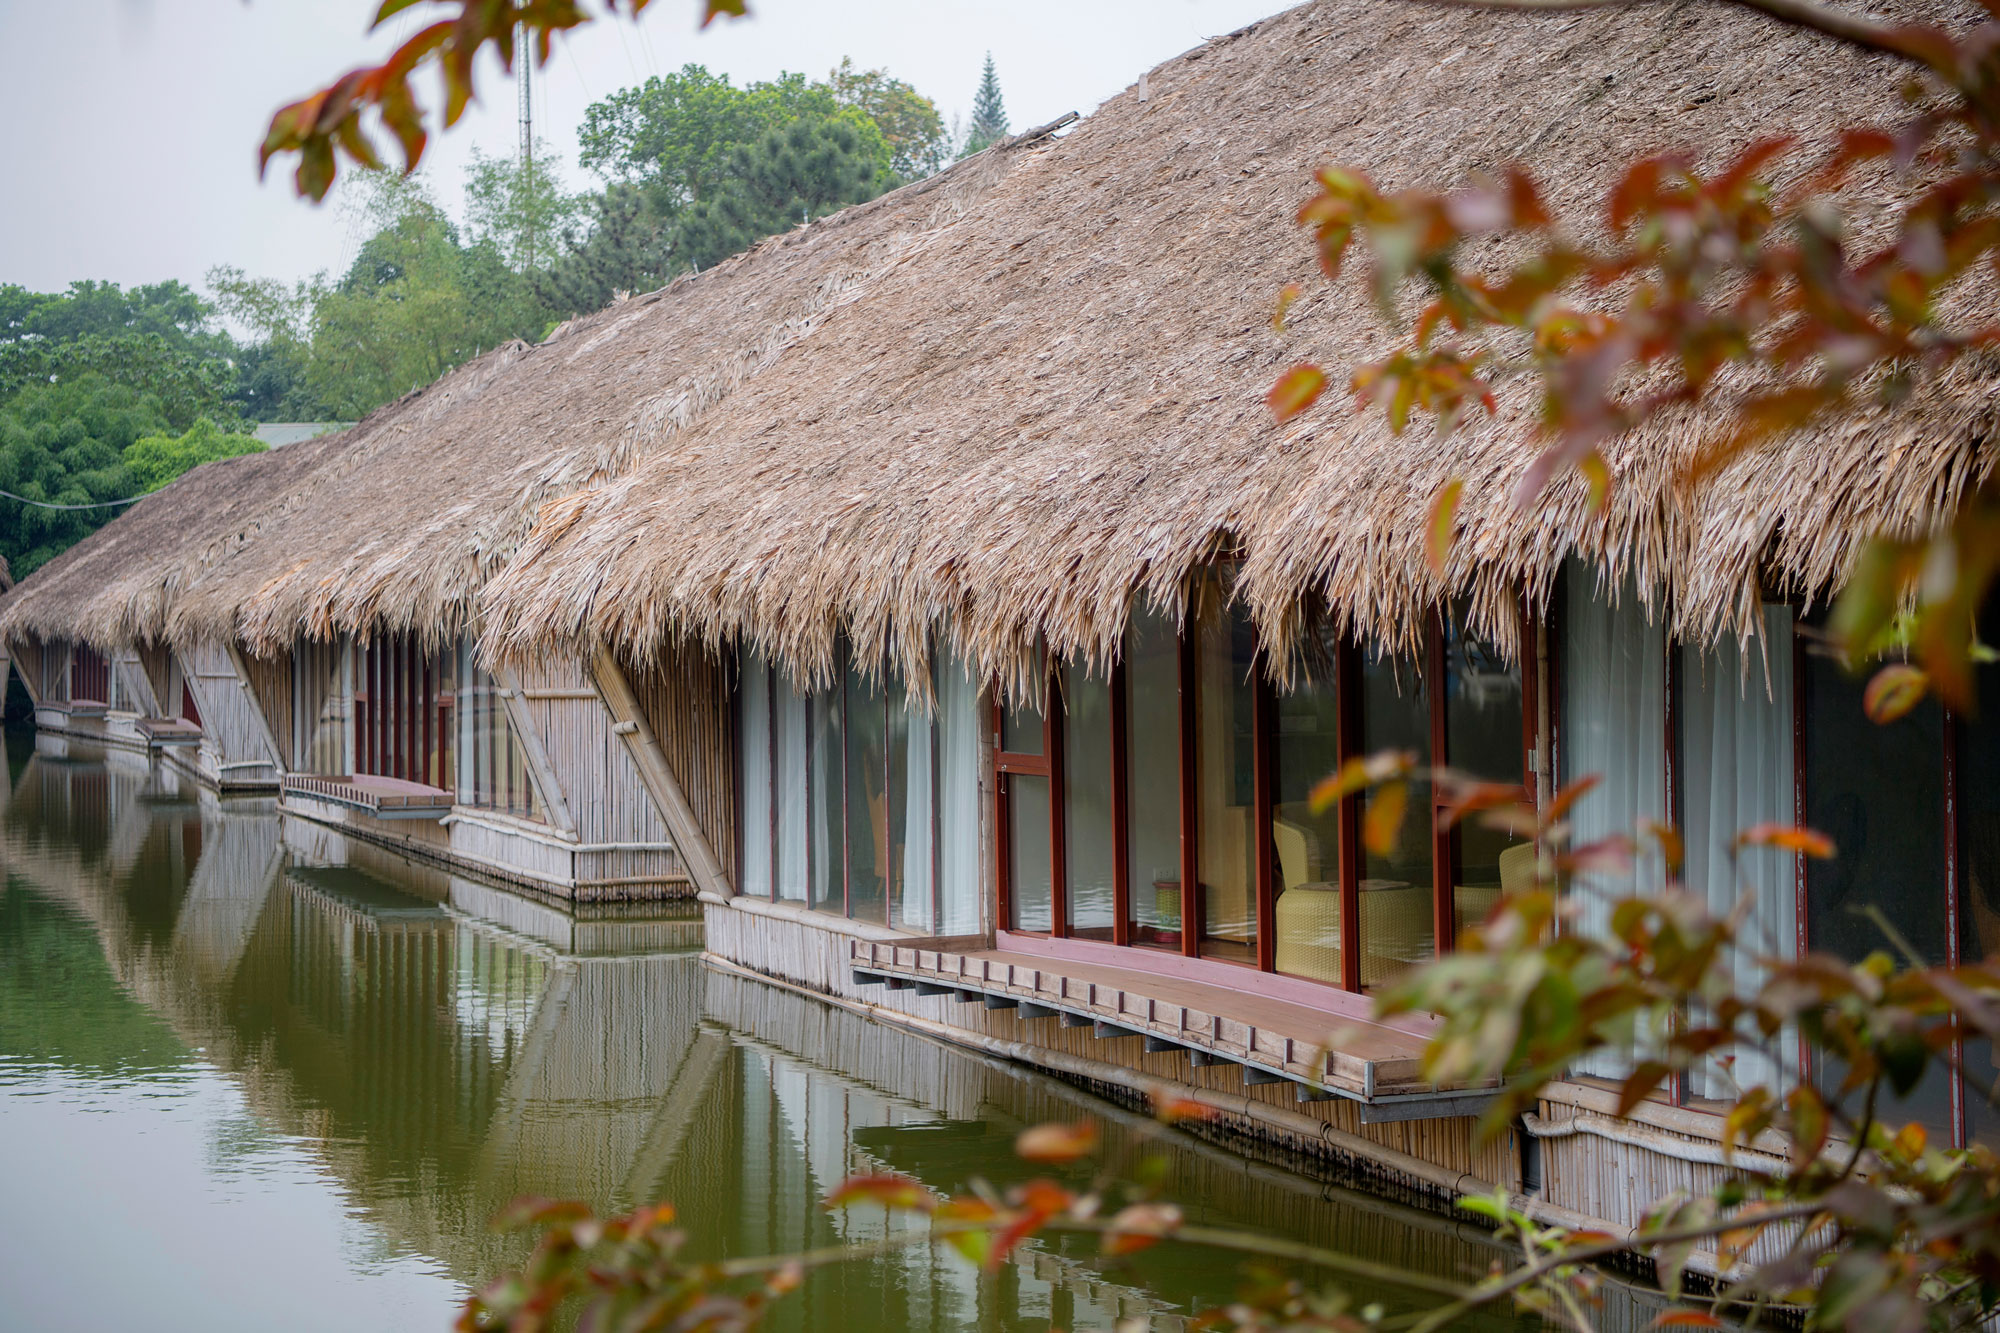  Thảo Viên Resort: Khu nghỉ dưỡng lãng mạn gần Hà Nội